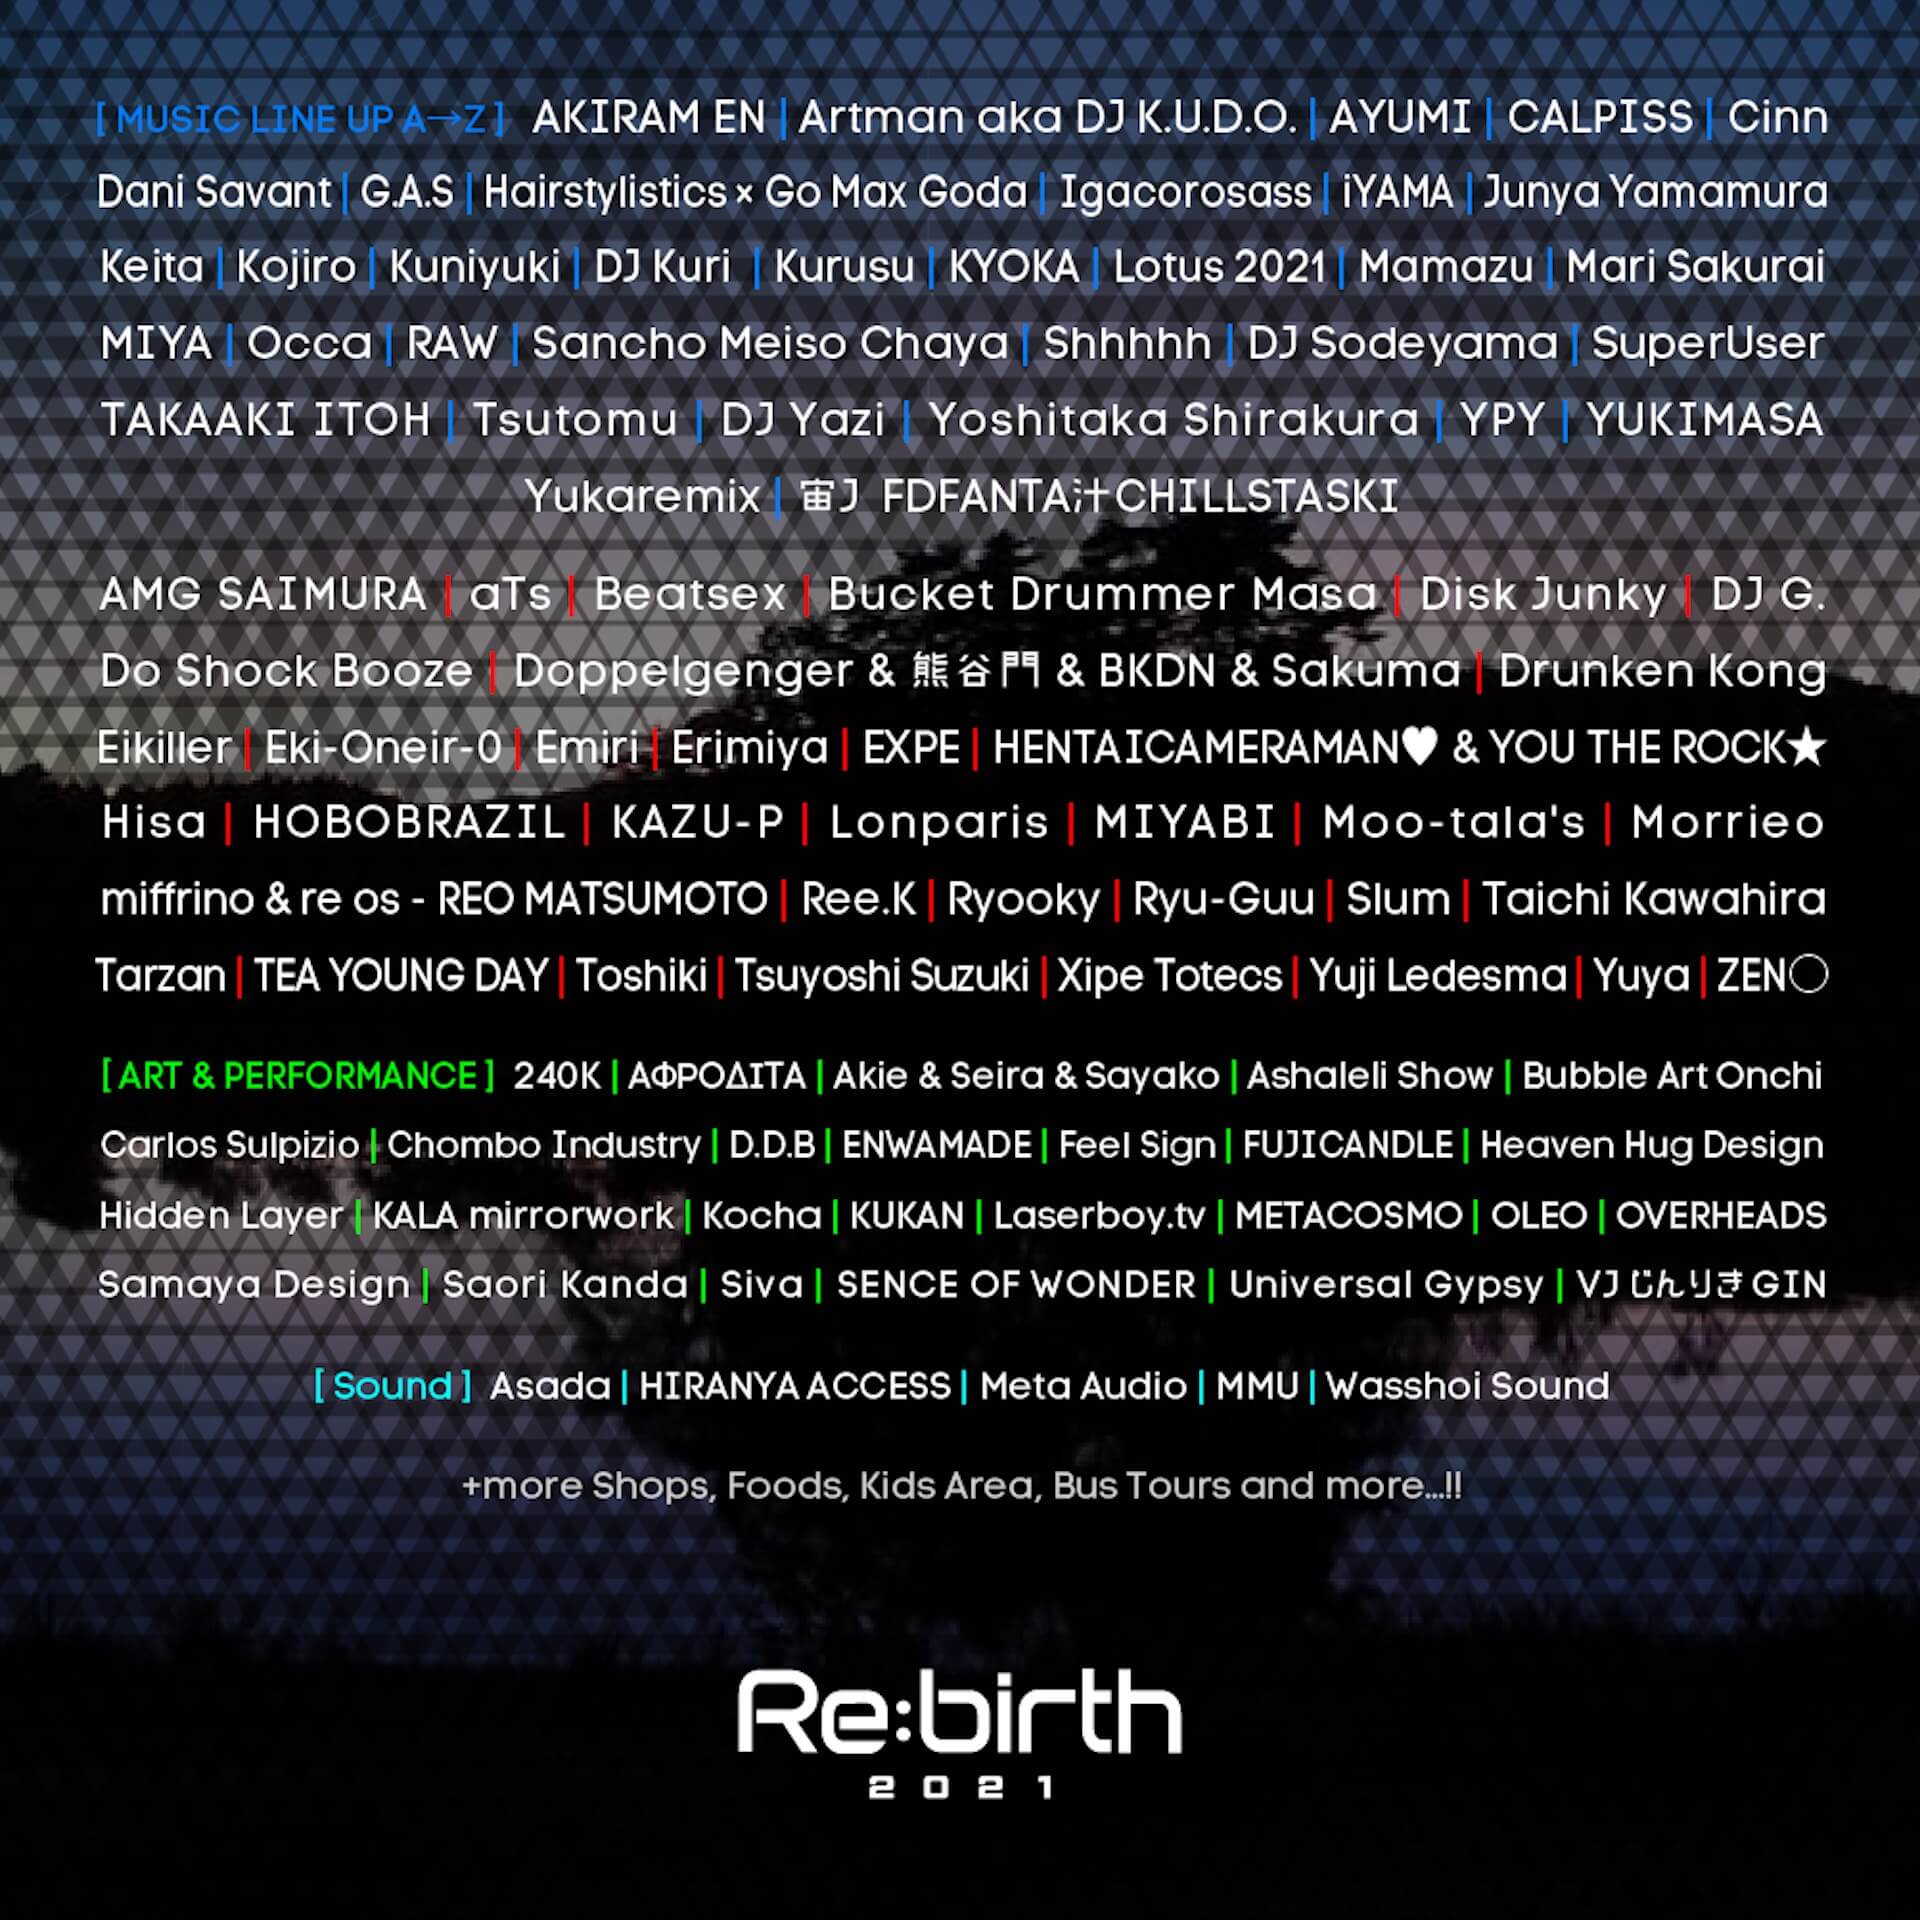 音楽と幻想的なアートパフォーマンスが楽しめる＜Re：birth 2021＞の開催が決定！AKIRAM EN、Shhhhh、KYOKAなどラインナップ music211007_rebirth_016